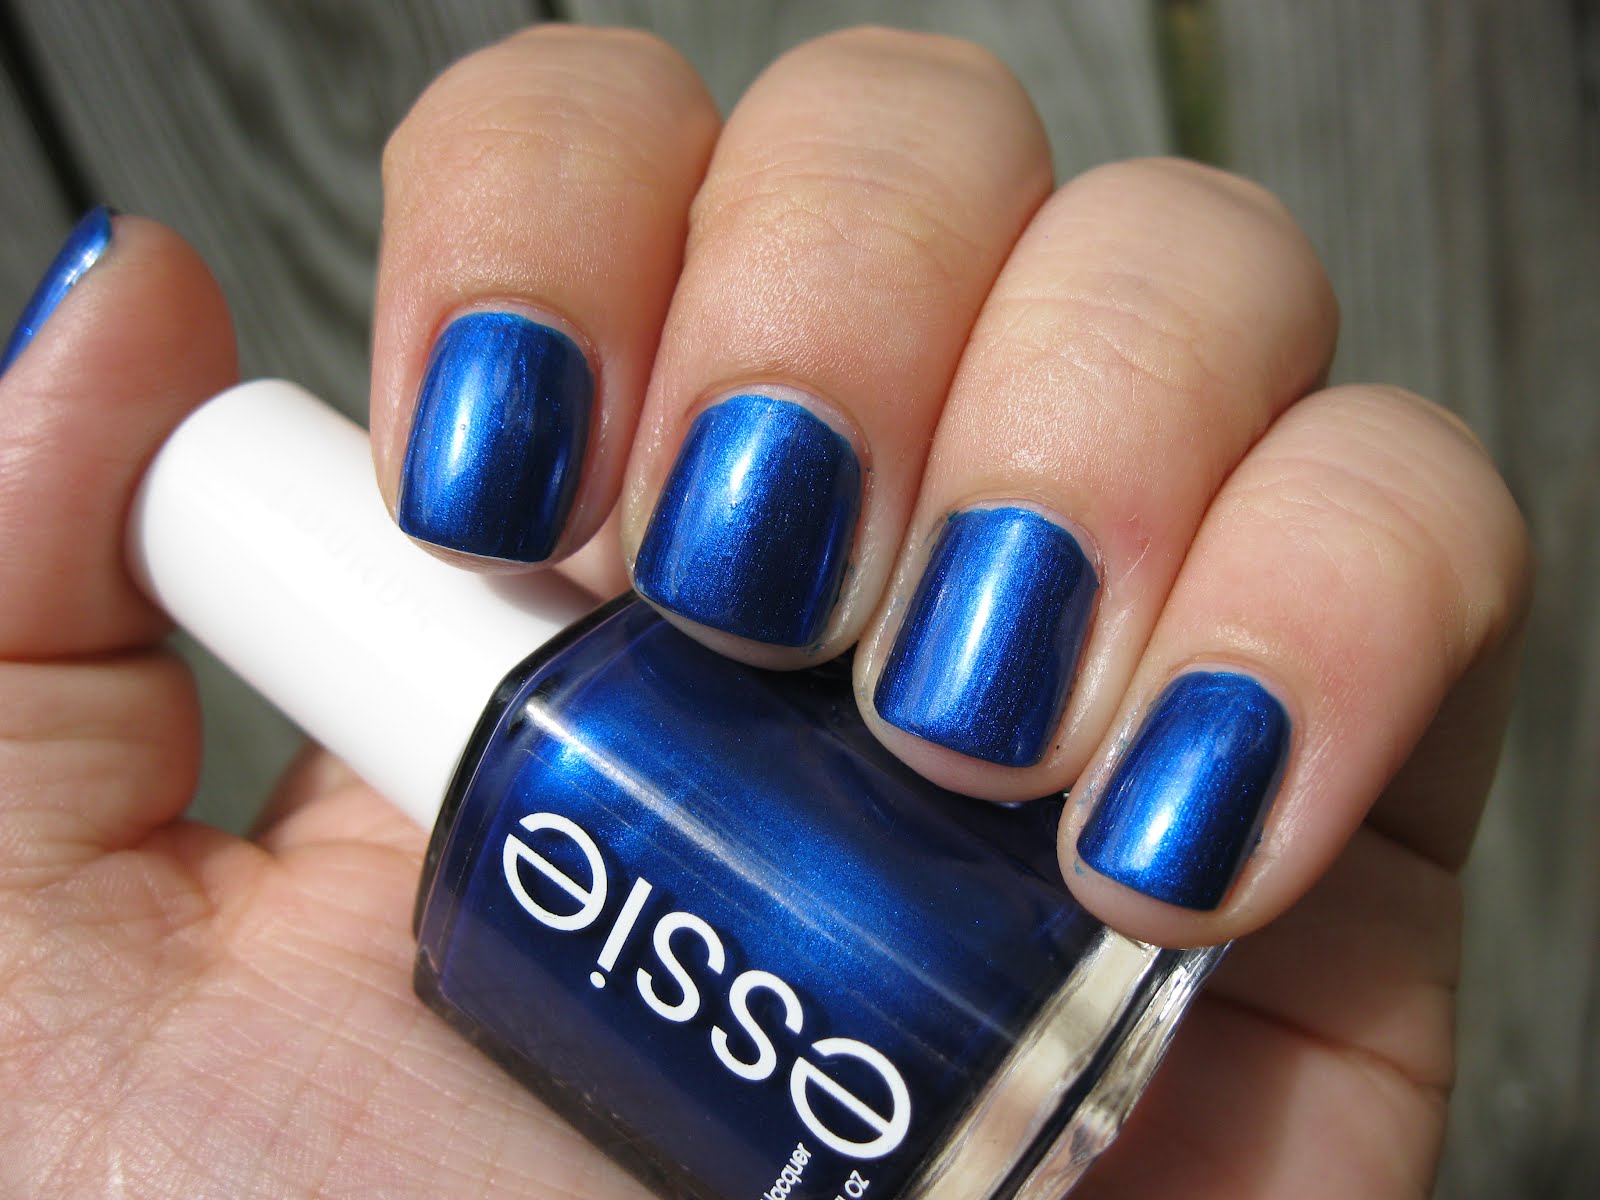 Essie Nail Polish - Aruba Blue - wide 1